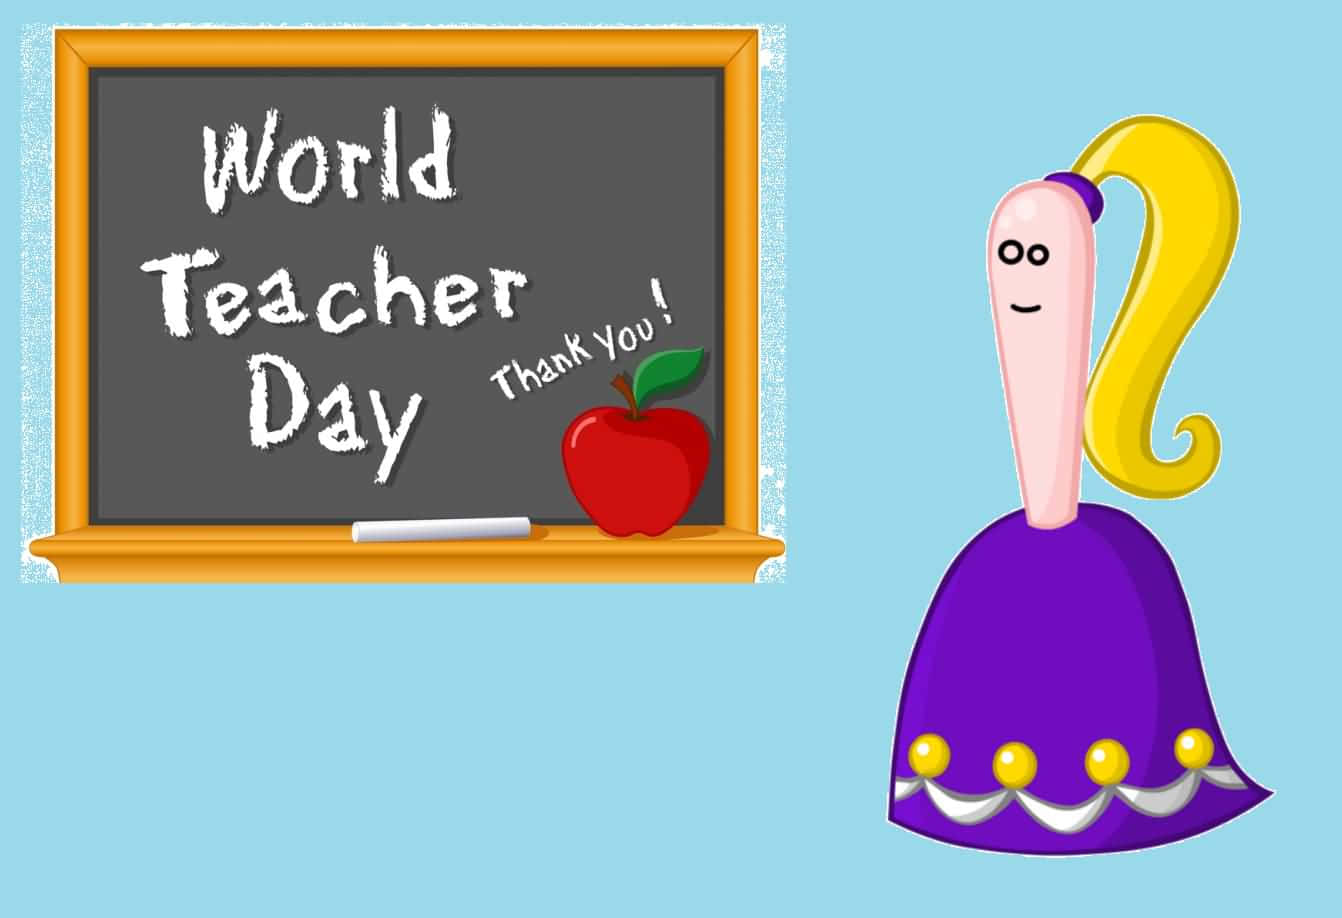 Firalärarna Som Har Haft En Positiv Påverkan På Livet För Många På Denna Glada Lärares Dag!